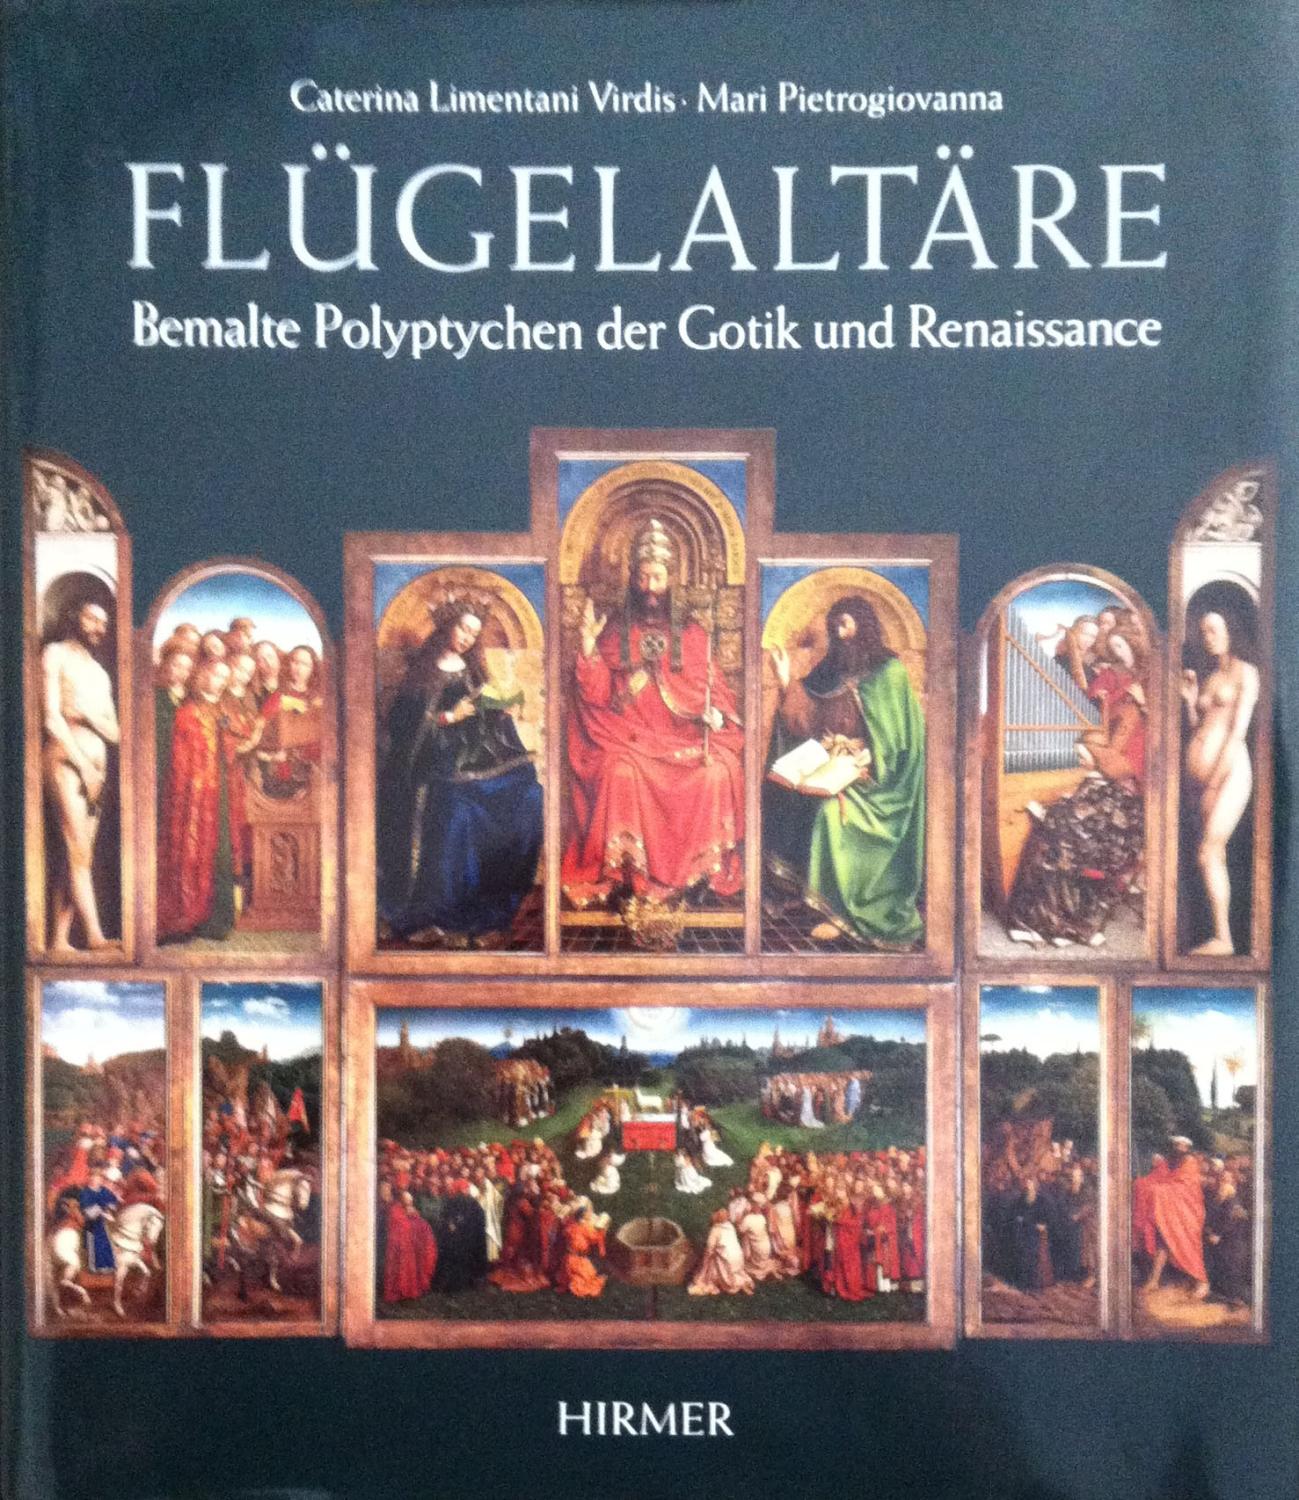 Flügelaltäre. Bemalte Polyptychen der Gotik und Renaissance. - Limentani Virdis, Caterina und Pietrogiovanna, Mari